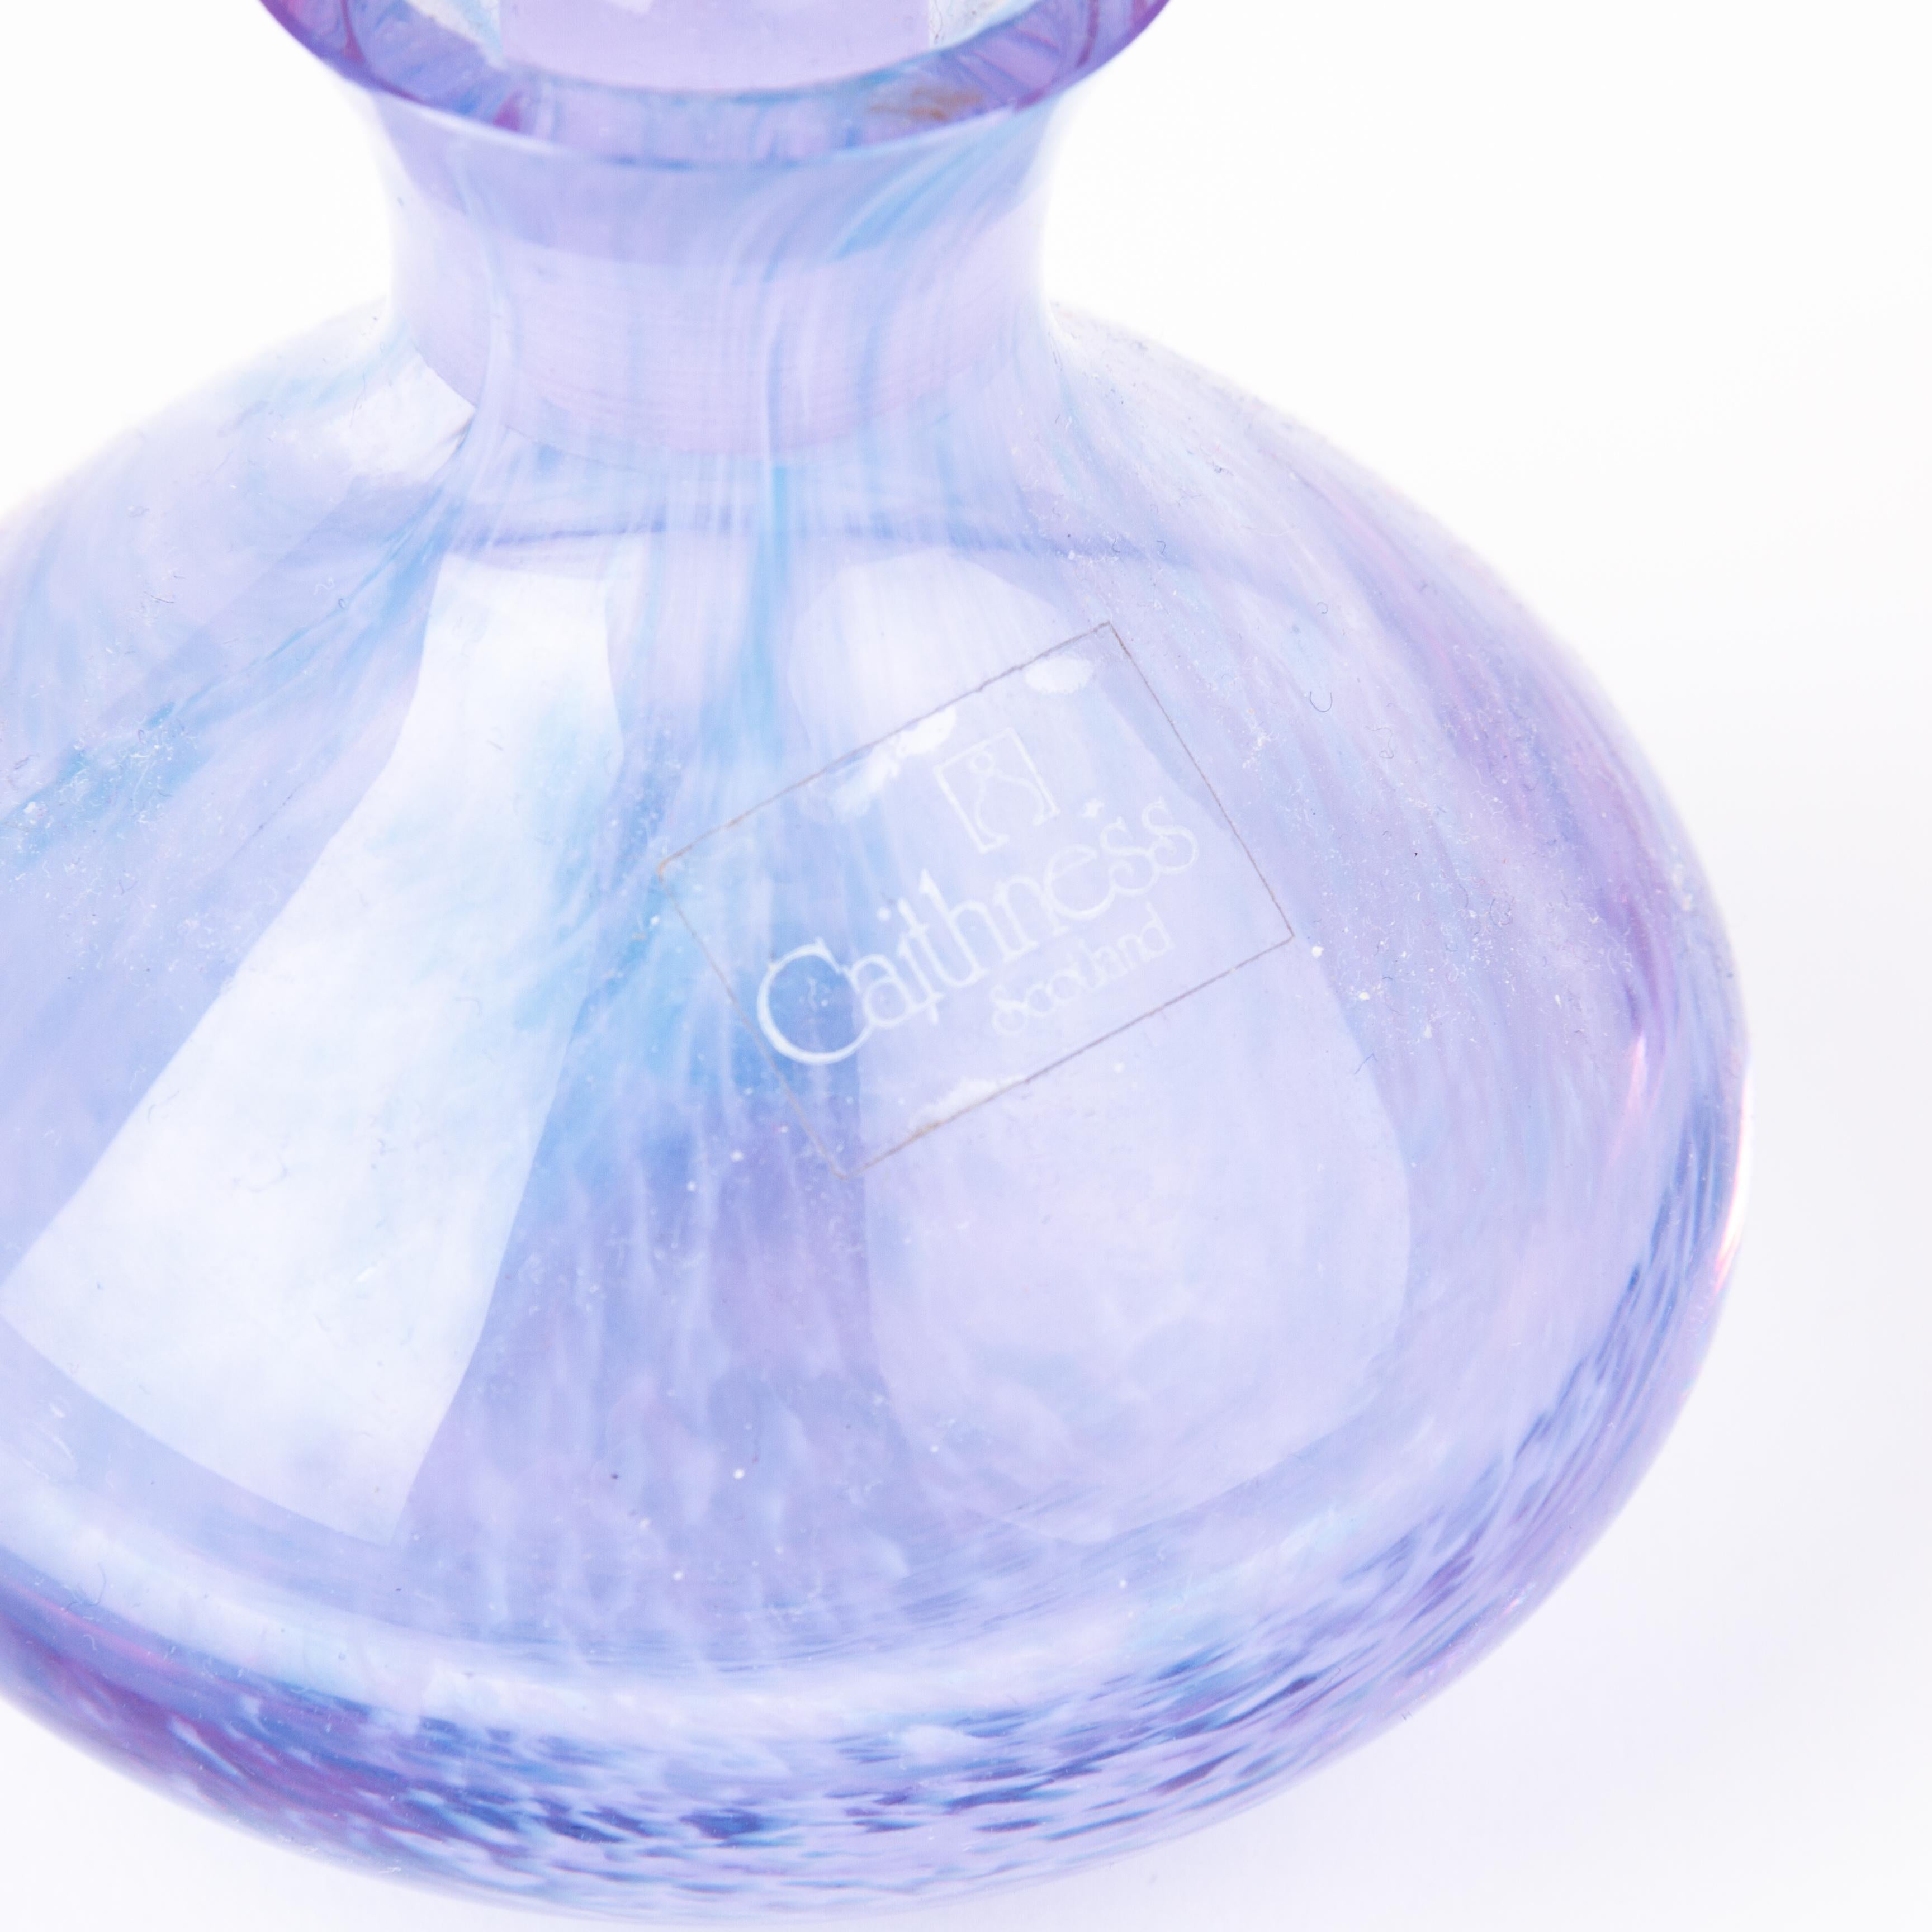 caithness perfume bottle